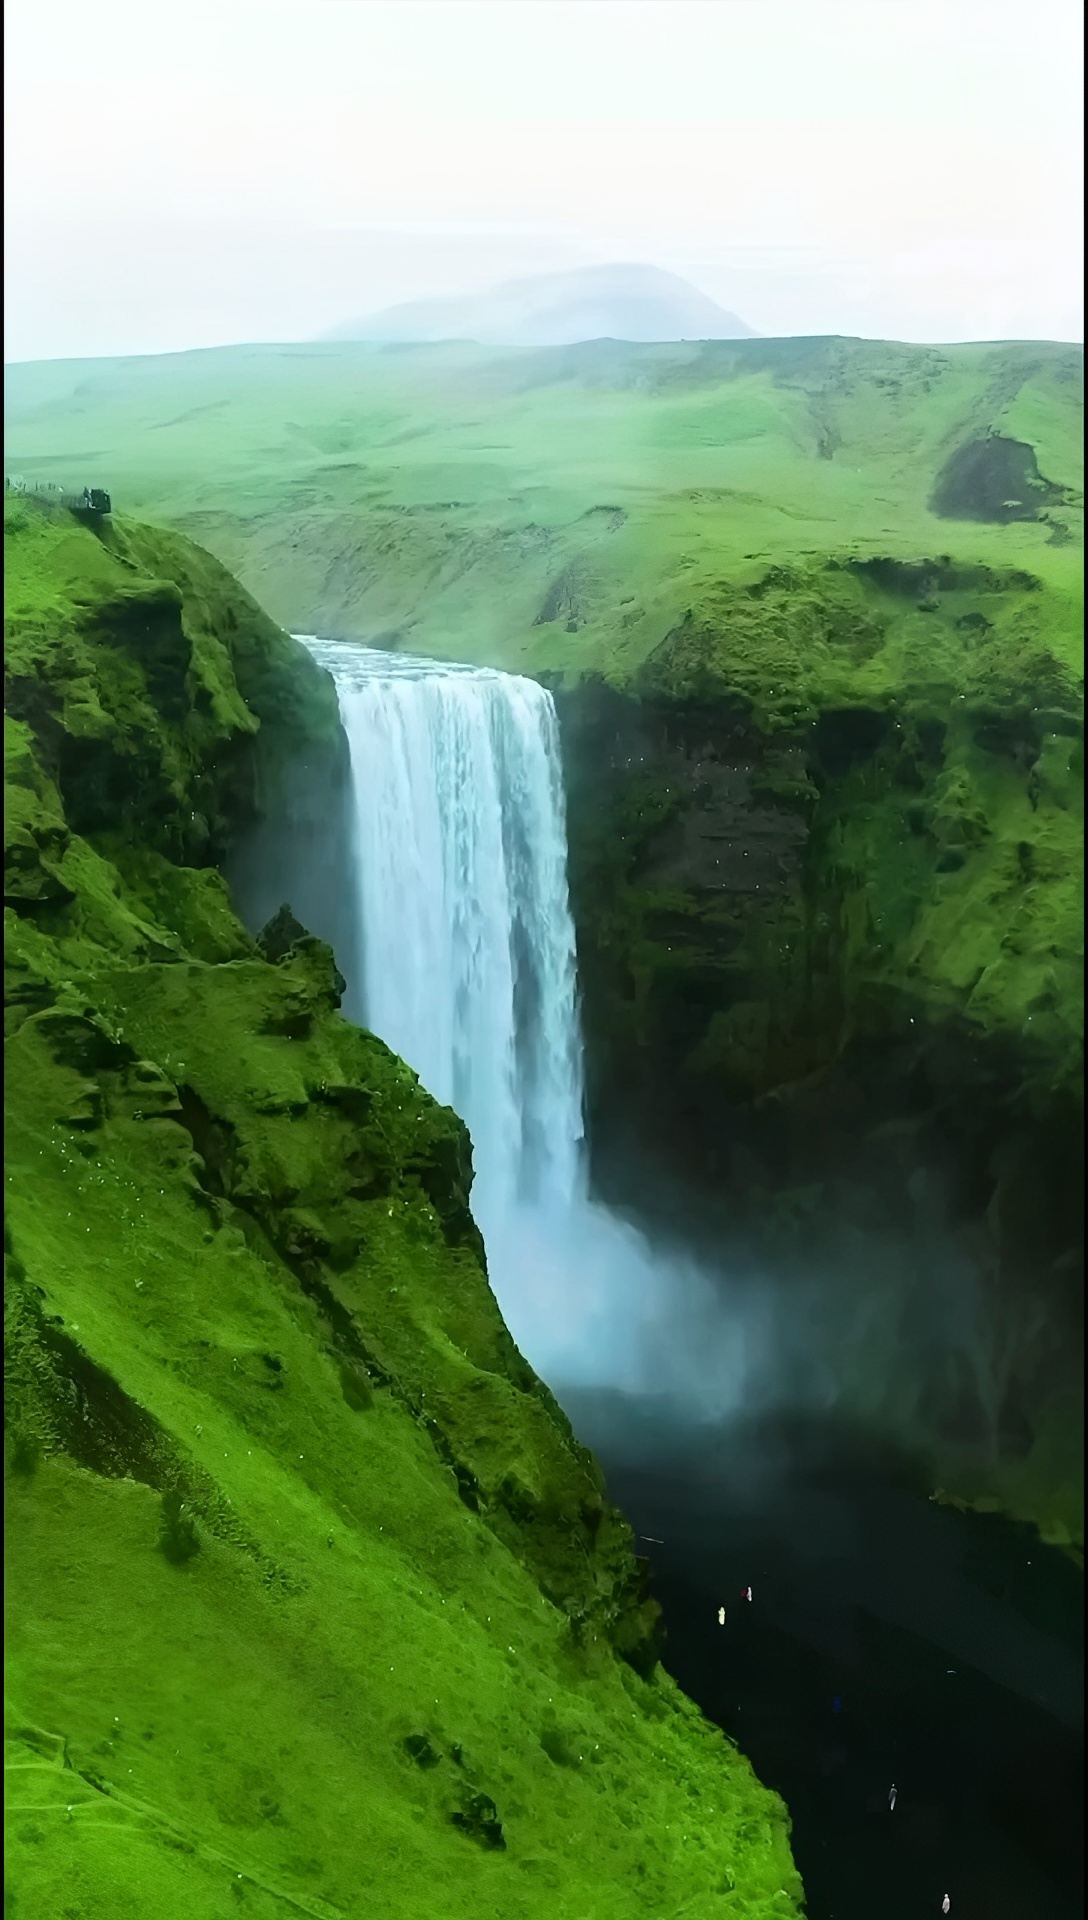 大自然的杰作——冰岛斯科加瀑布